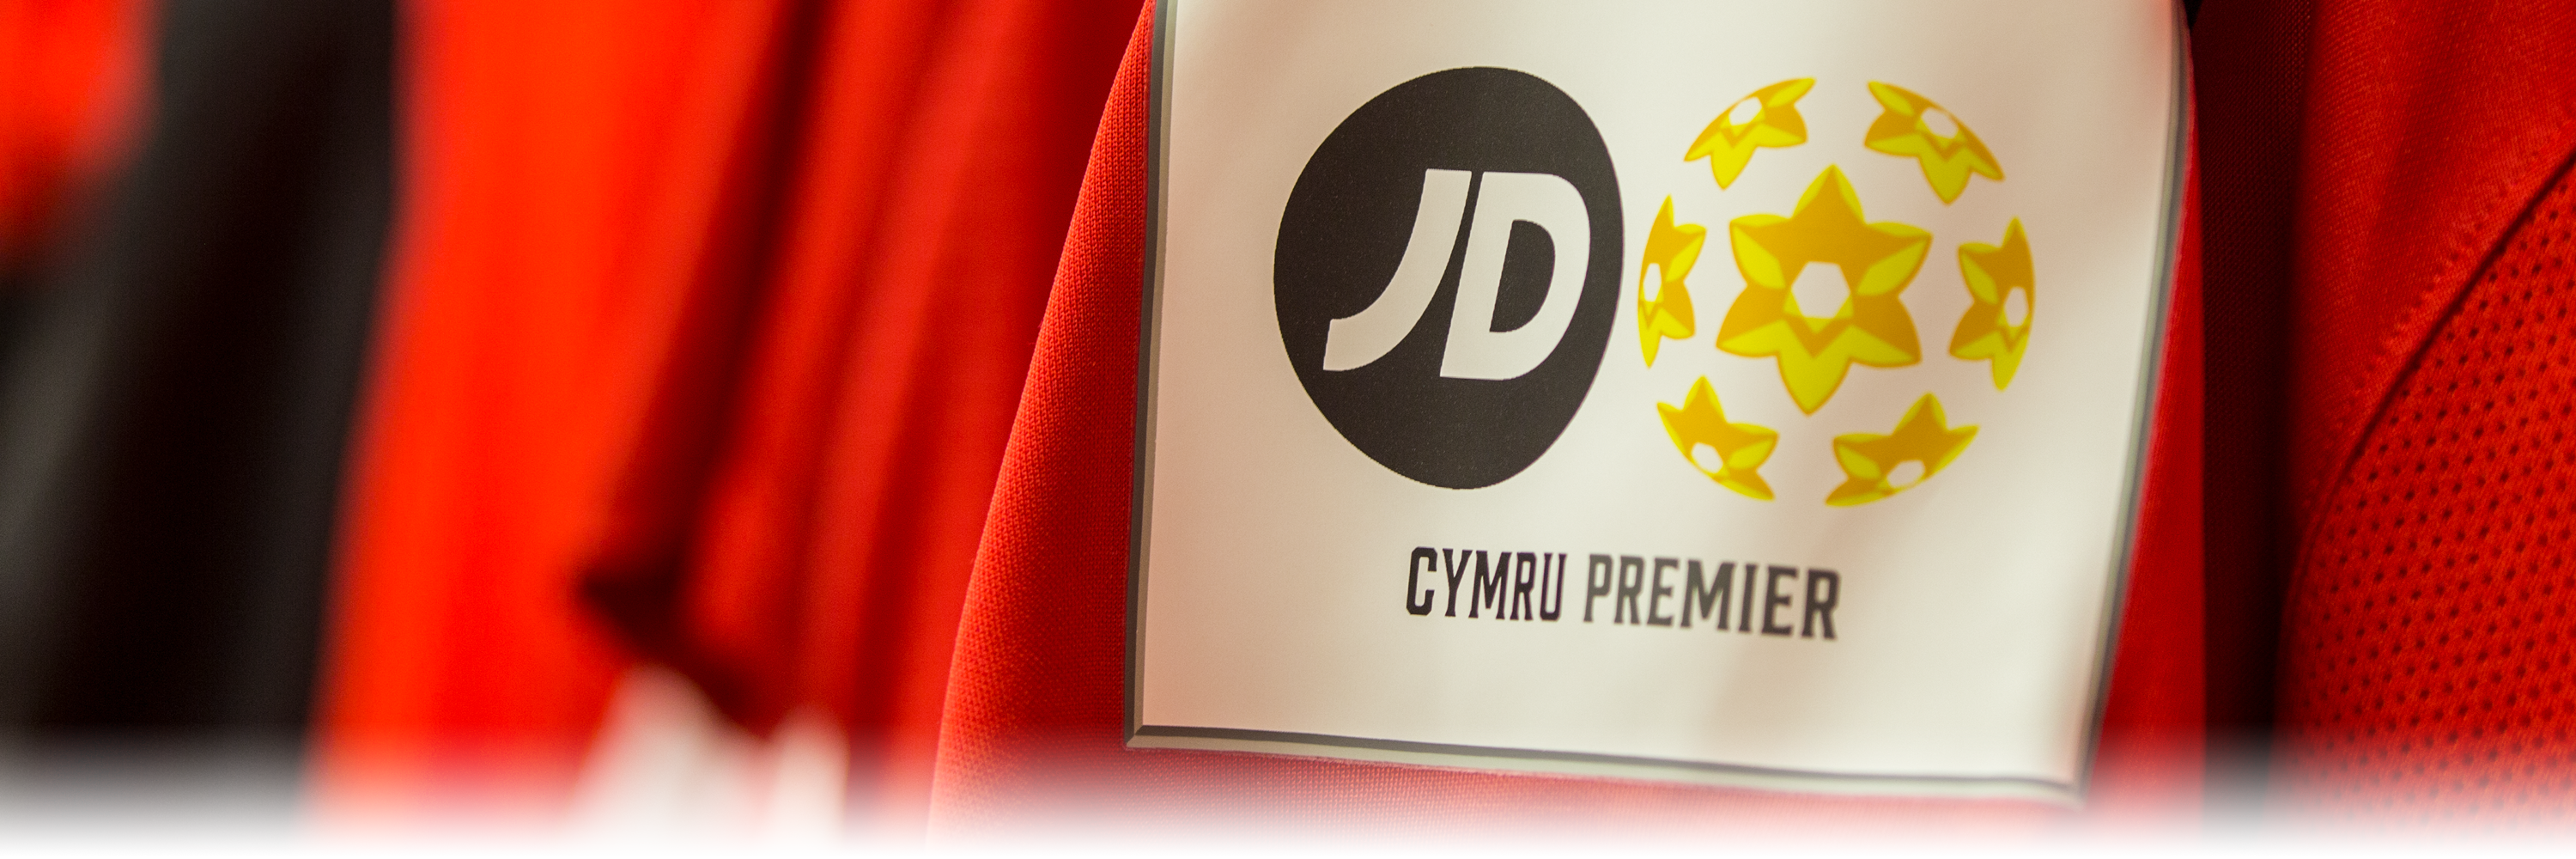 JD Welsh Premier League